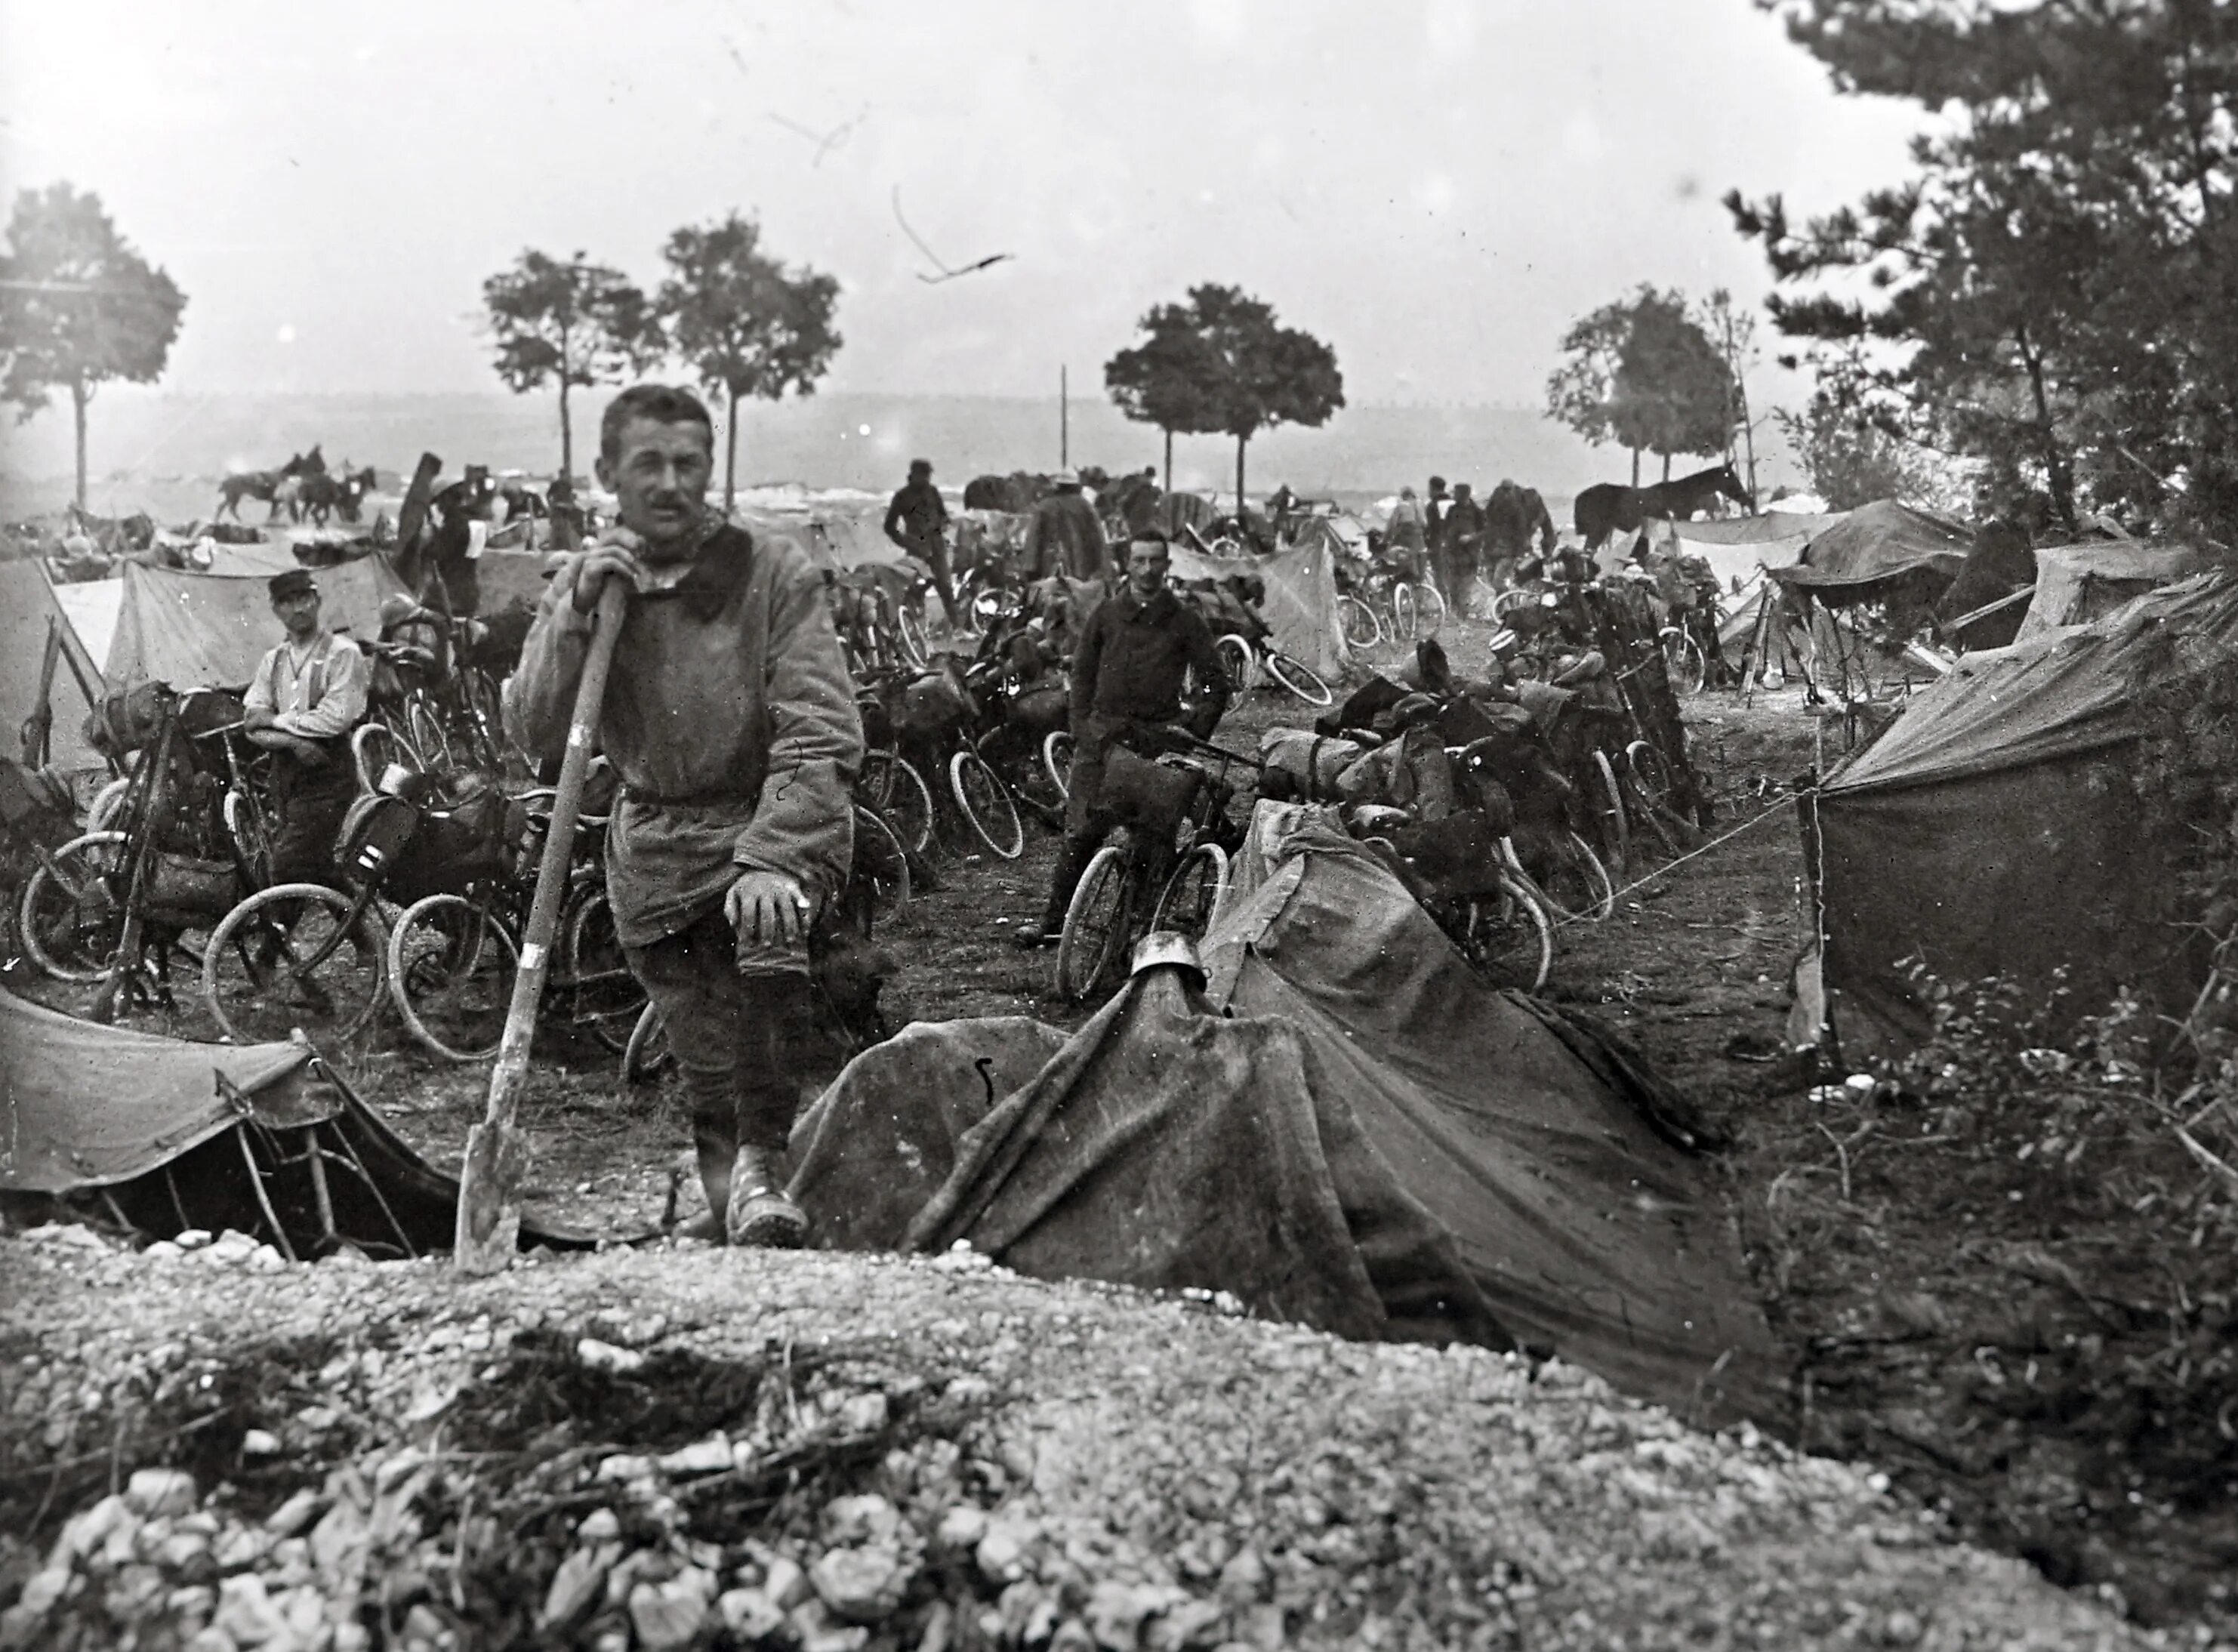 Во время первой мировой войны. Франция 1915. Французские солдаты 1915 года. Фронт Франция ПМВ 1915.